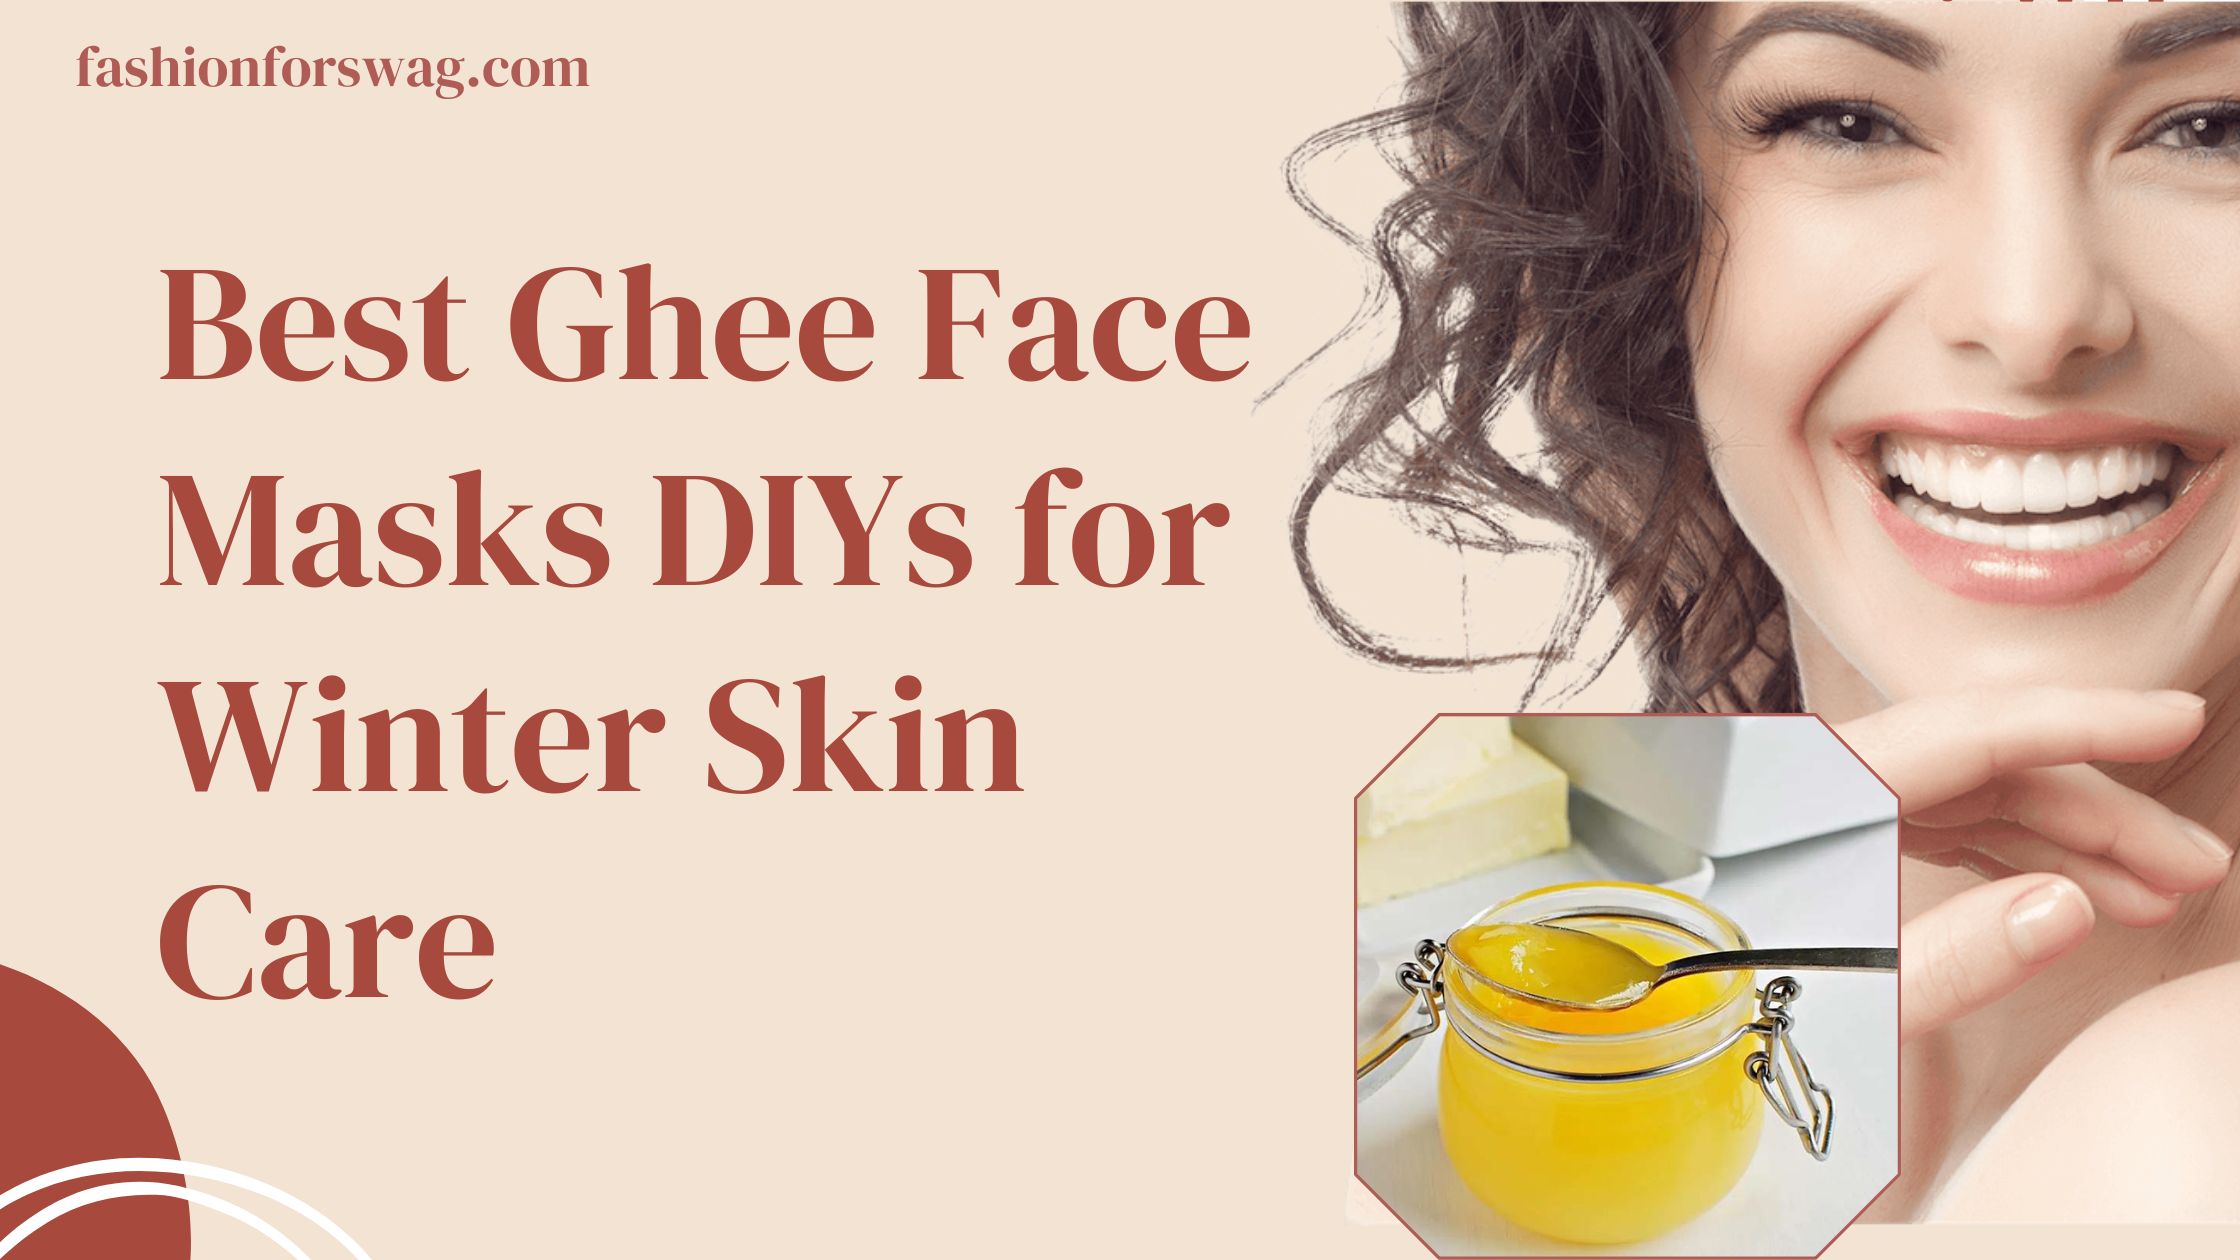 Best Ghee Face Masks DIYs for Winter Skin Care